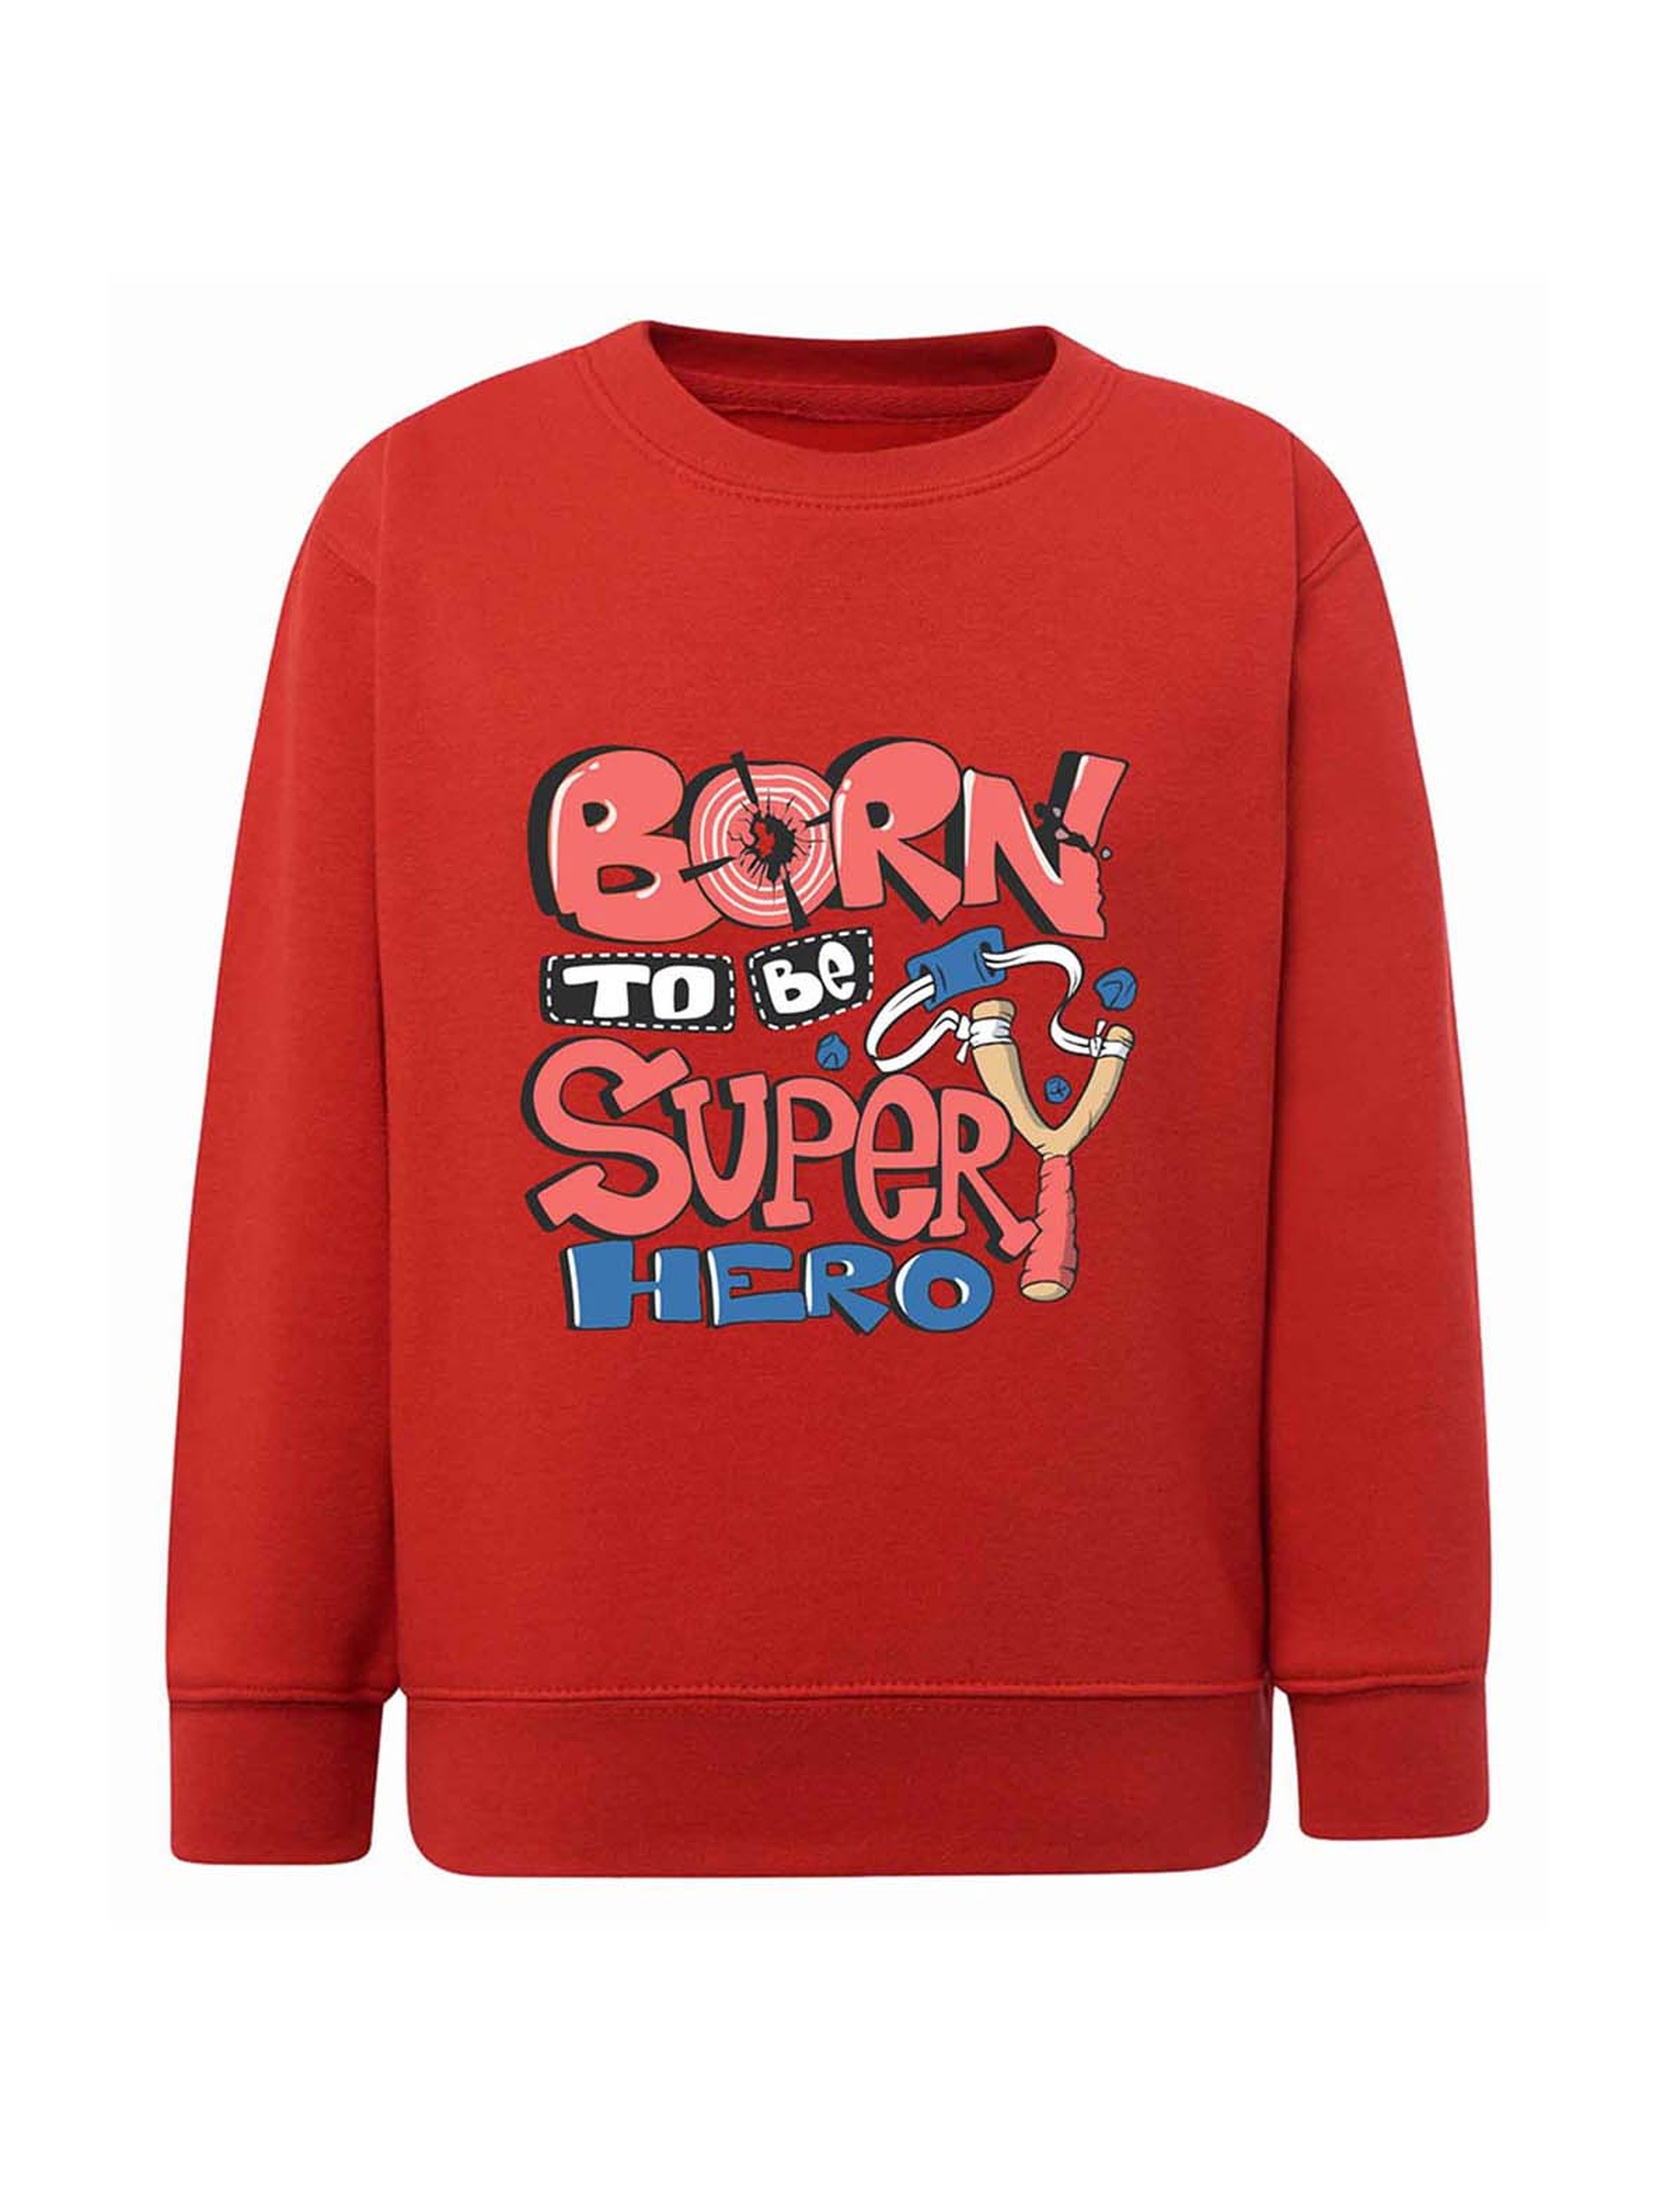 Chłopięca bluza z napisem Born to be superhero czerwona